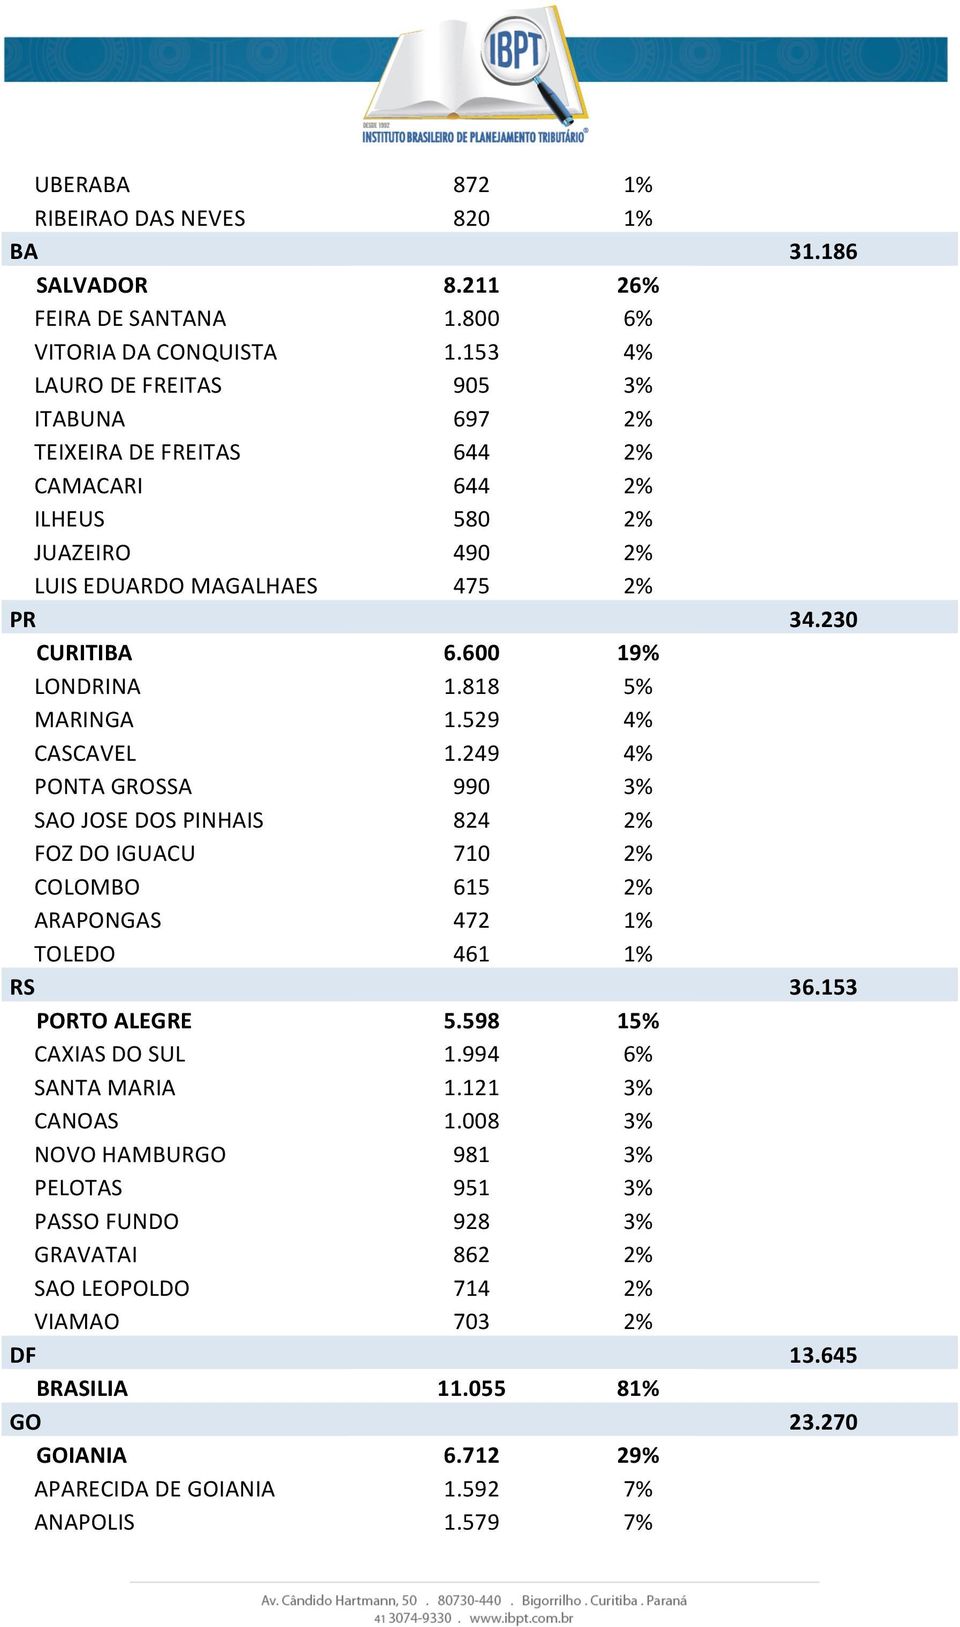 818 5% MARINGA 1.529 4% CASCAVEL 1.249 4% PONTA GROSSA 990 3% SAO JOSE DOS PINHAIS 824 2% FOZ DO IGUACU 710 2% COLOMBO 615 2% ARAPONGAS 472 1% TOLEDO 461 1% RS PORTO ALEGRE 5.